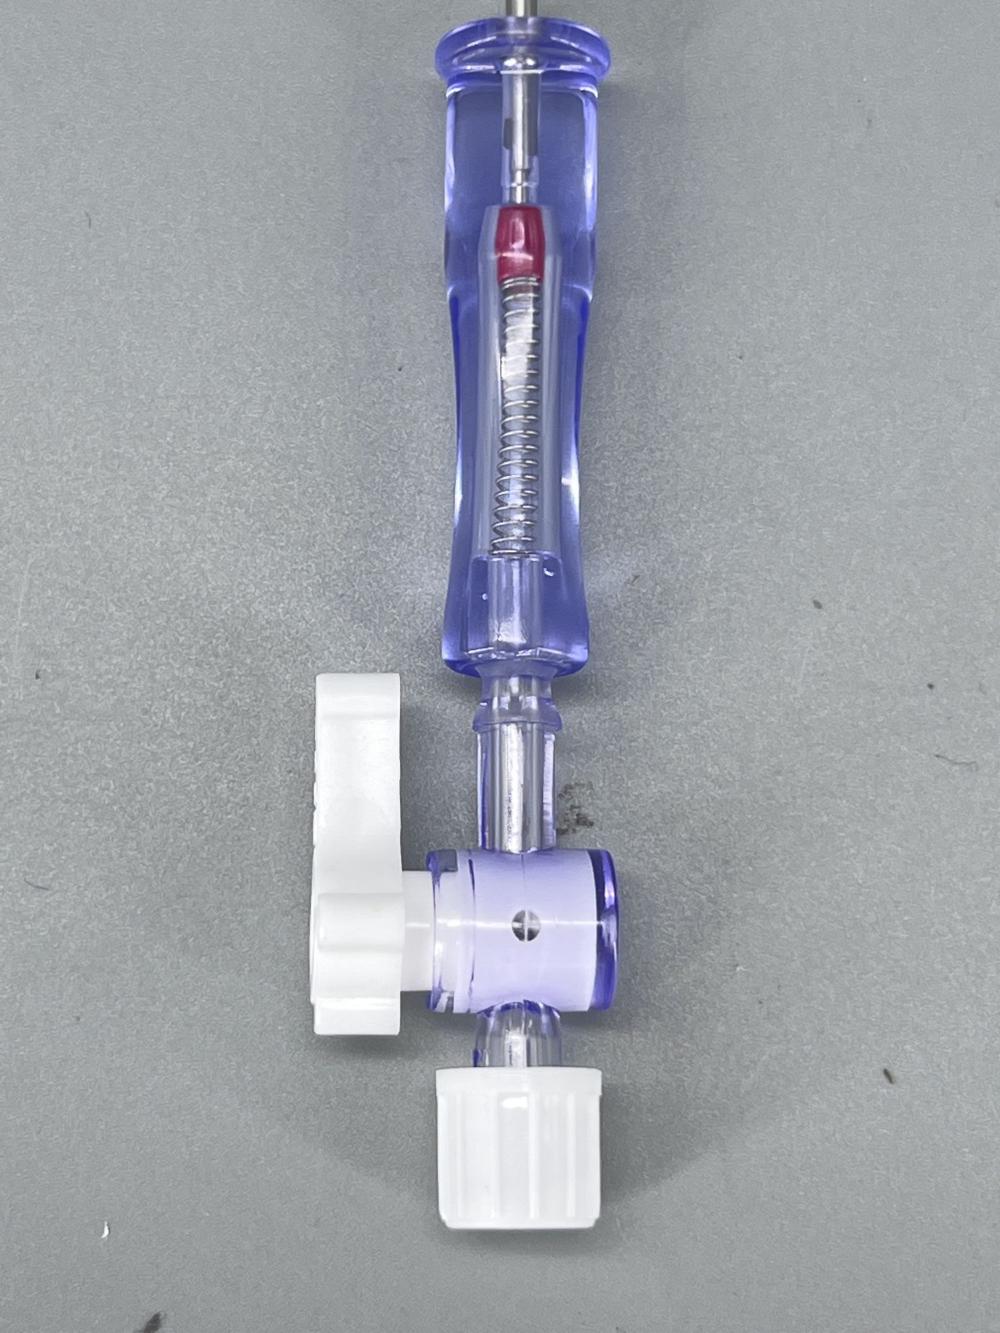 Disposable laparoscopy safety veress needle